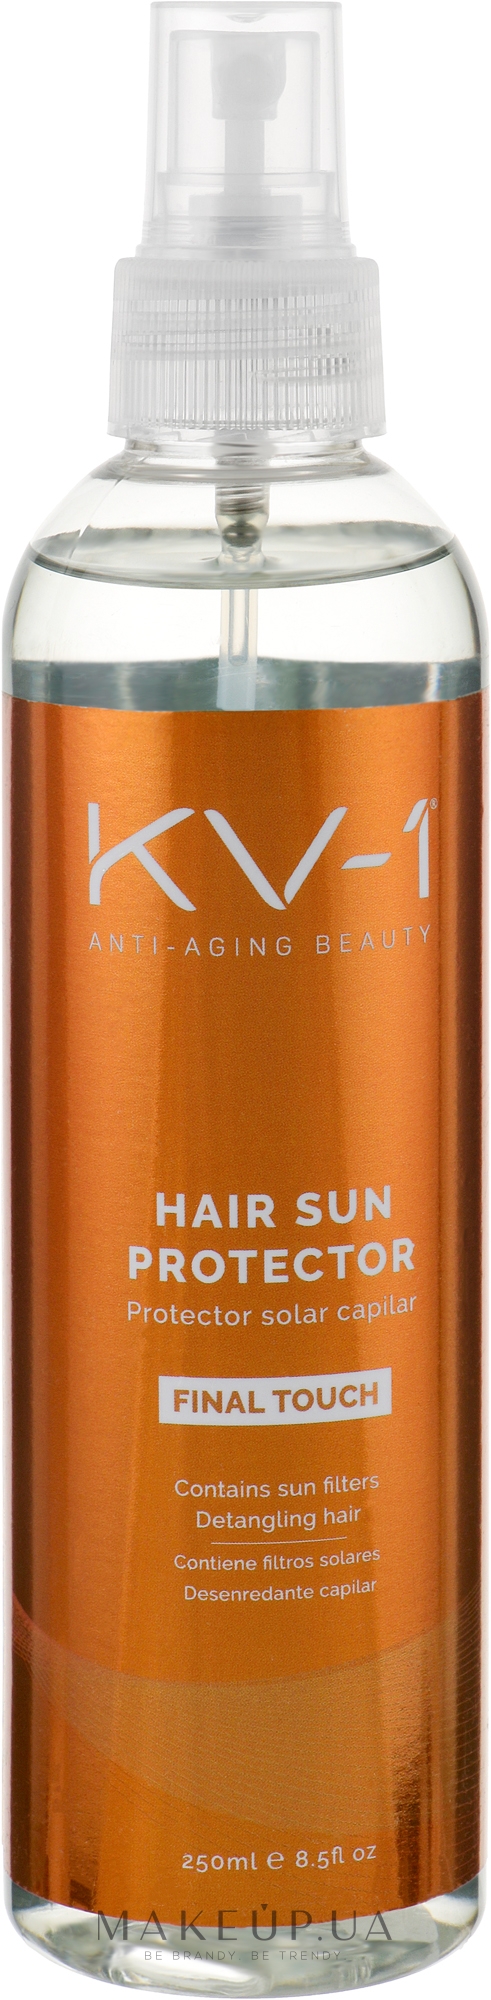 Спрей для защиты волос от солнечных лучей - KV-1 Final Touch Hair Sun Protector — фото 250ml